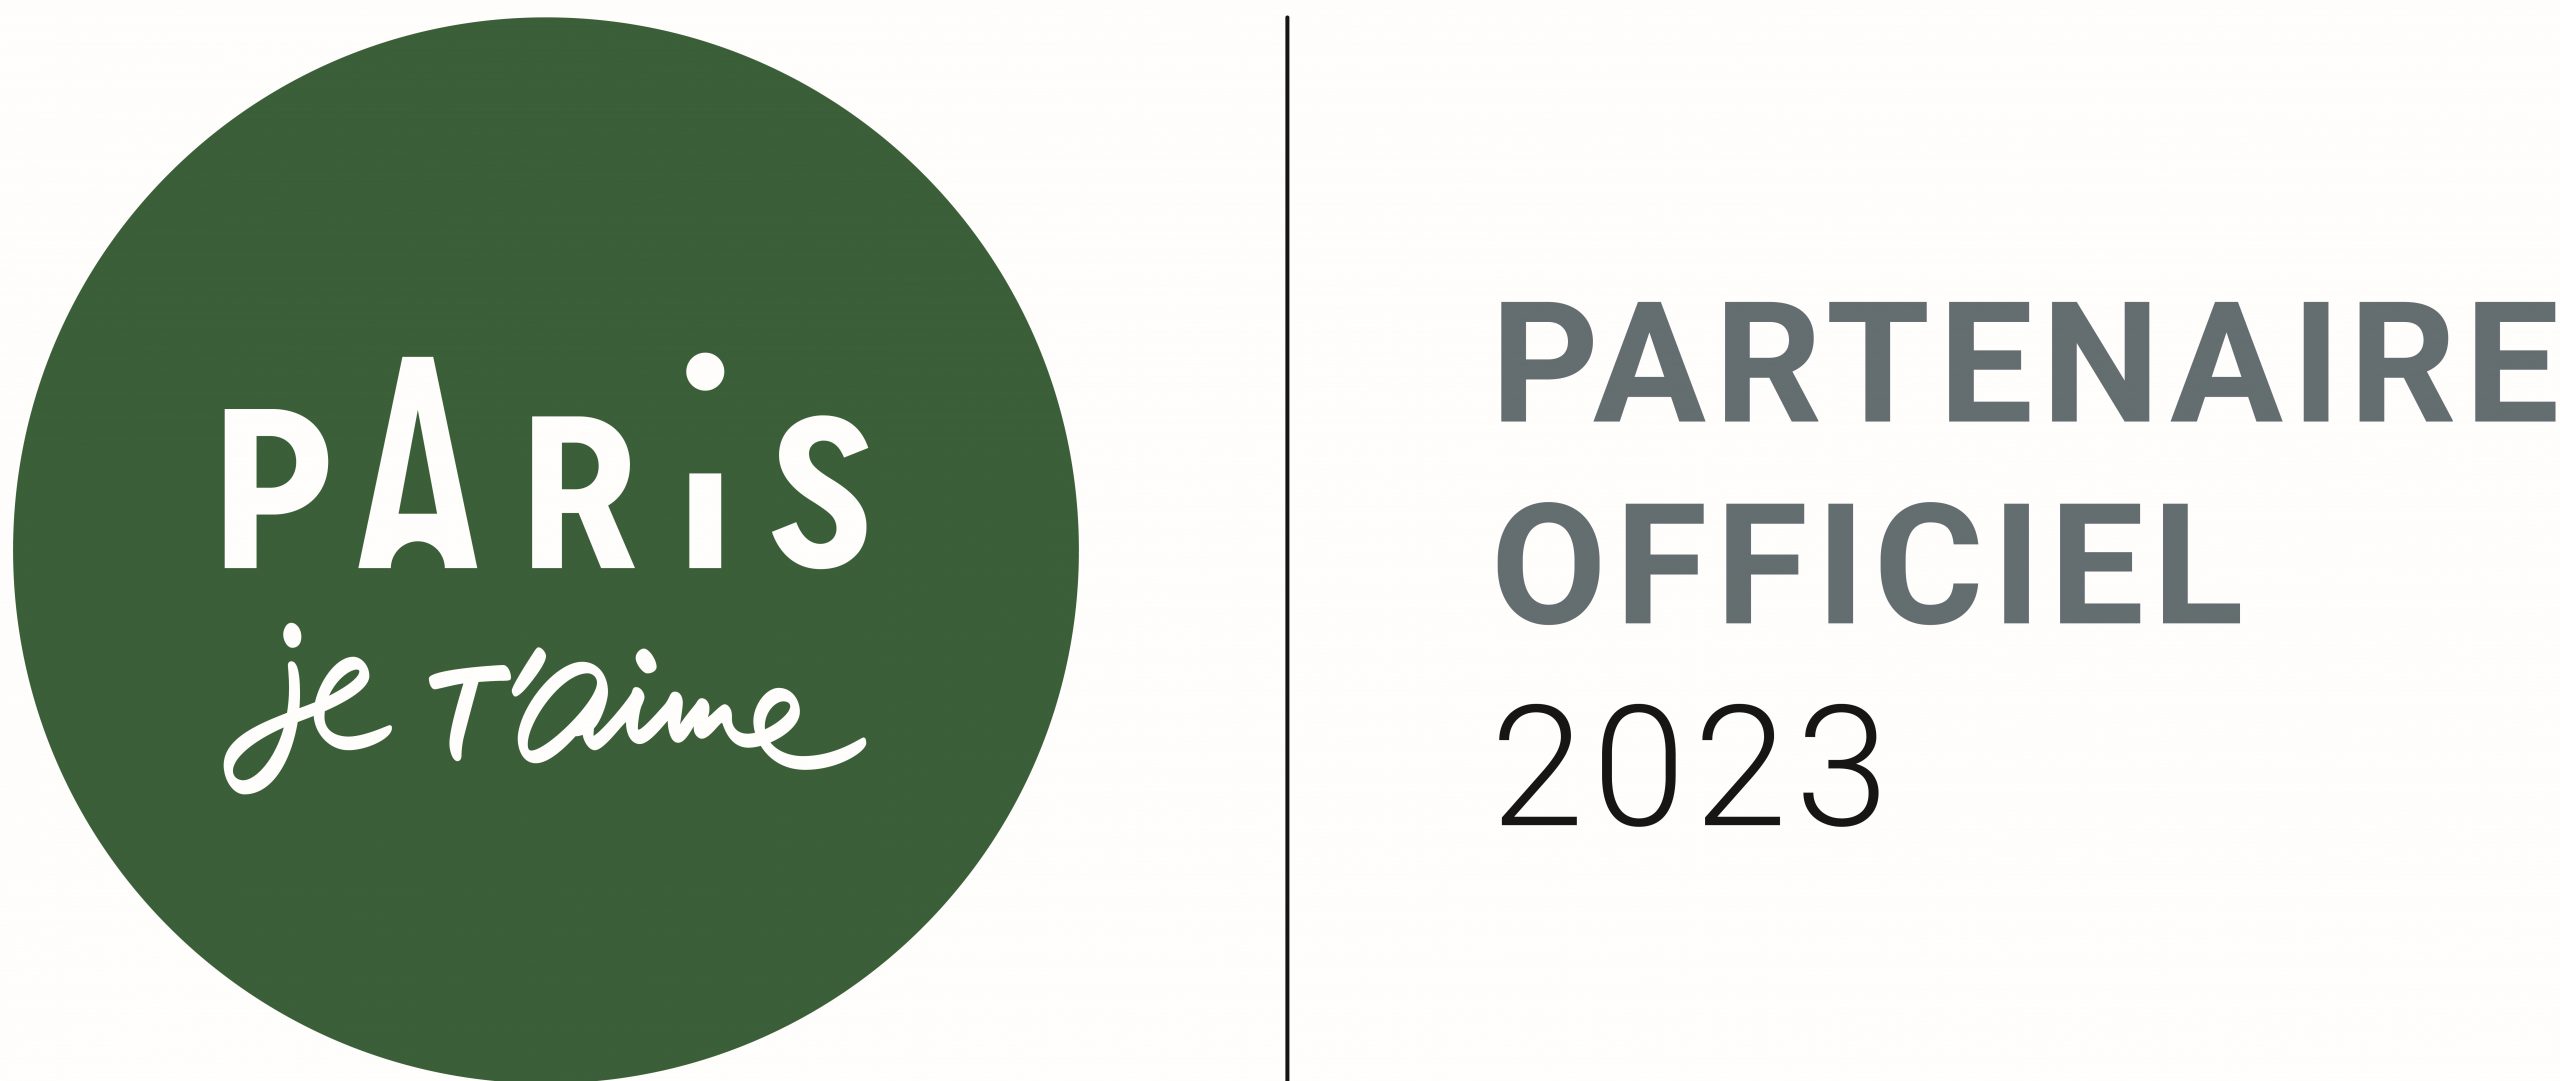 Paris je t'aime - Partnaire officiel 2023